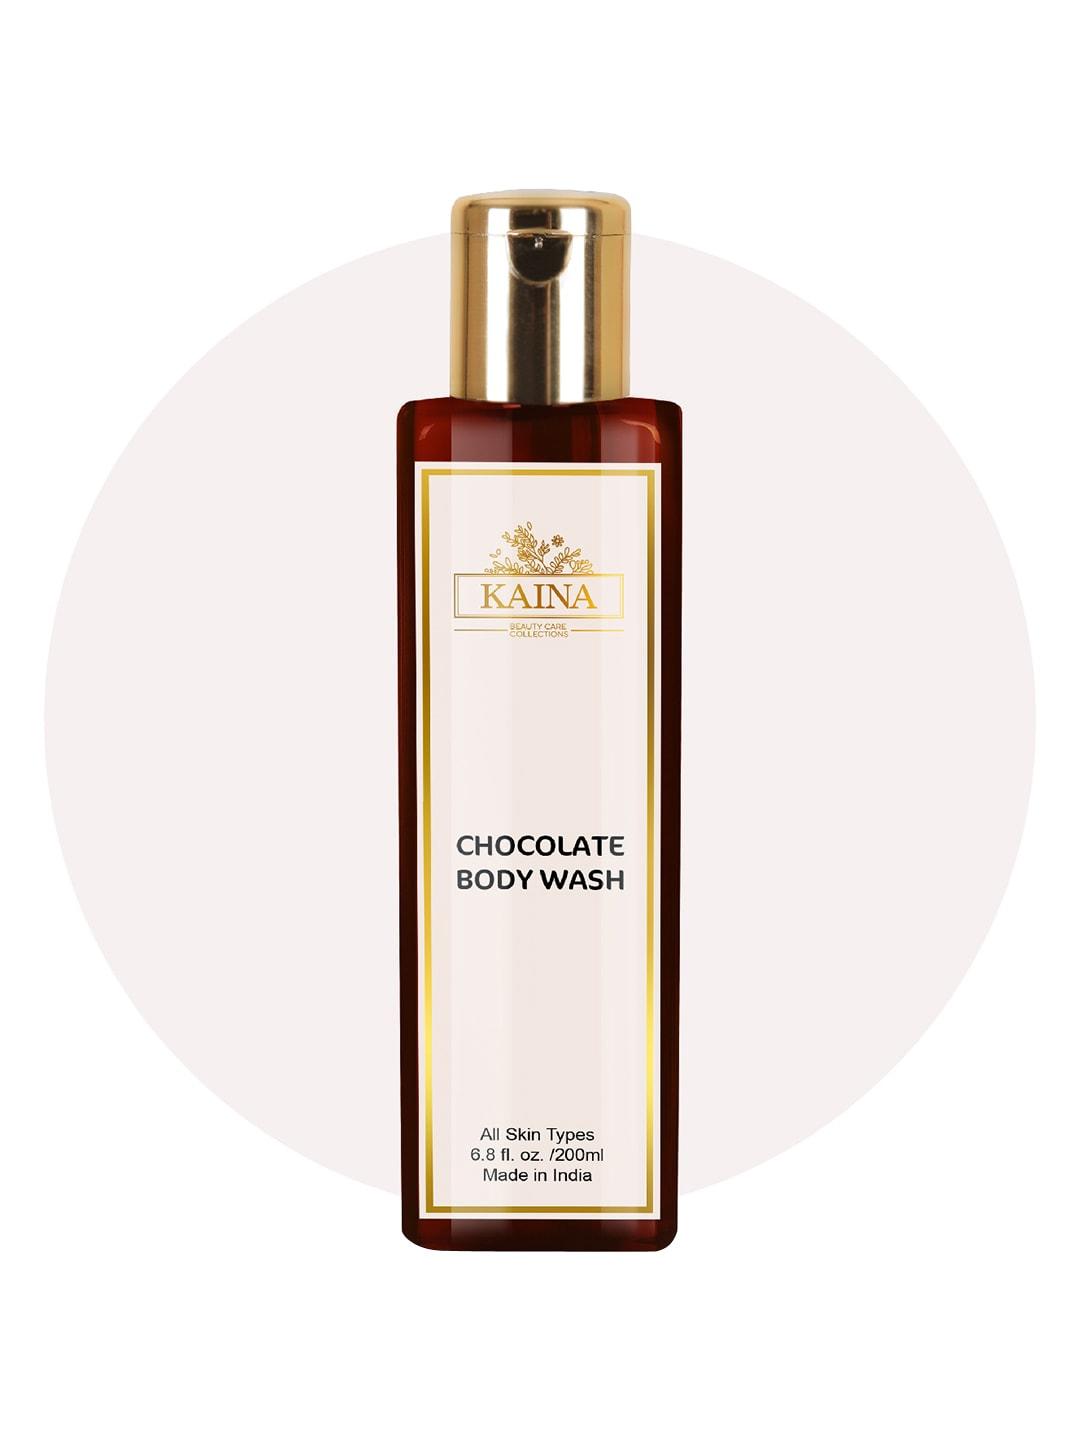 Kaina skincare Chocolate Body Wash with Jojoba Oil for All Skin Types - 200ml